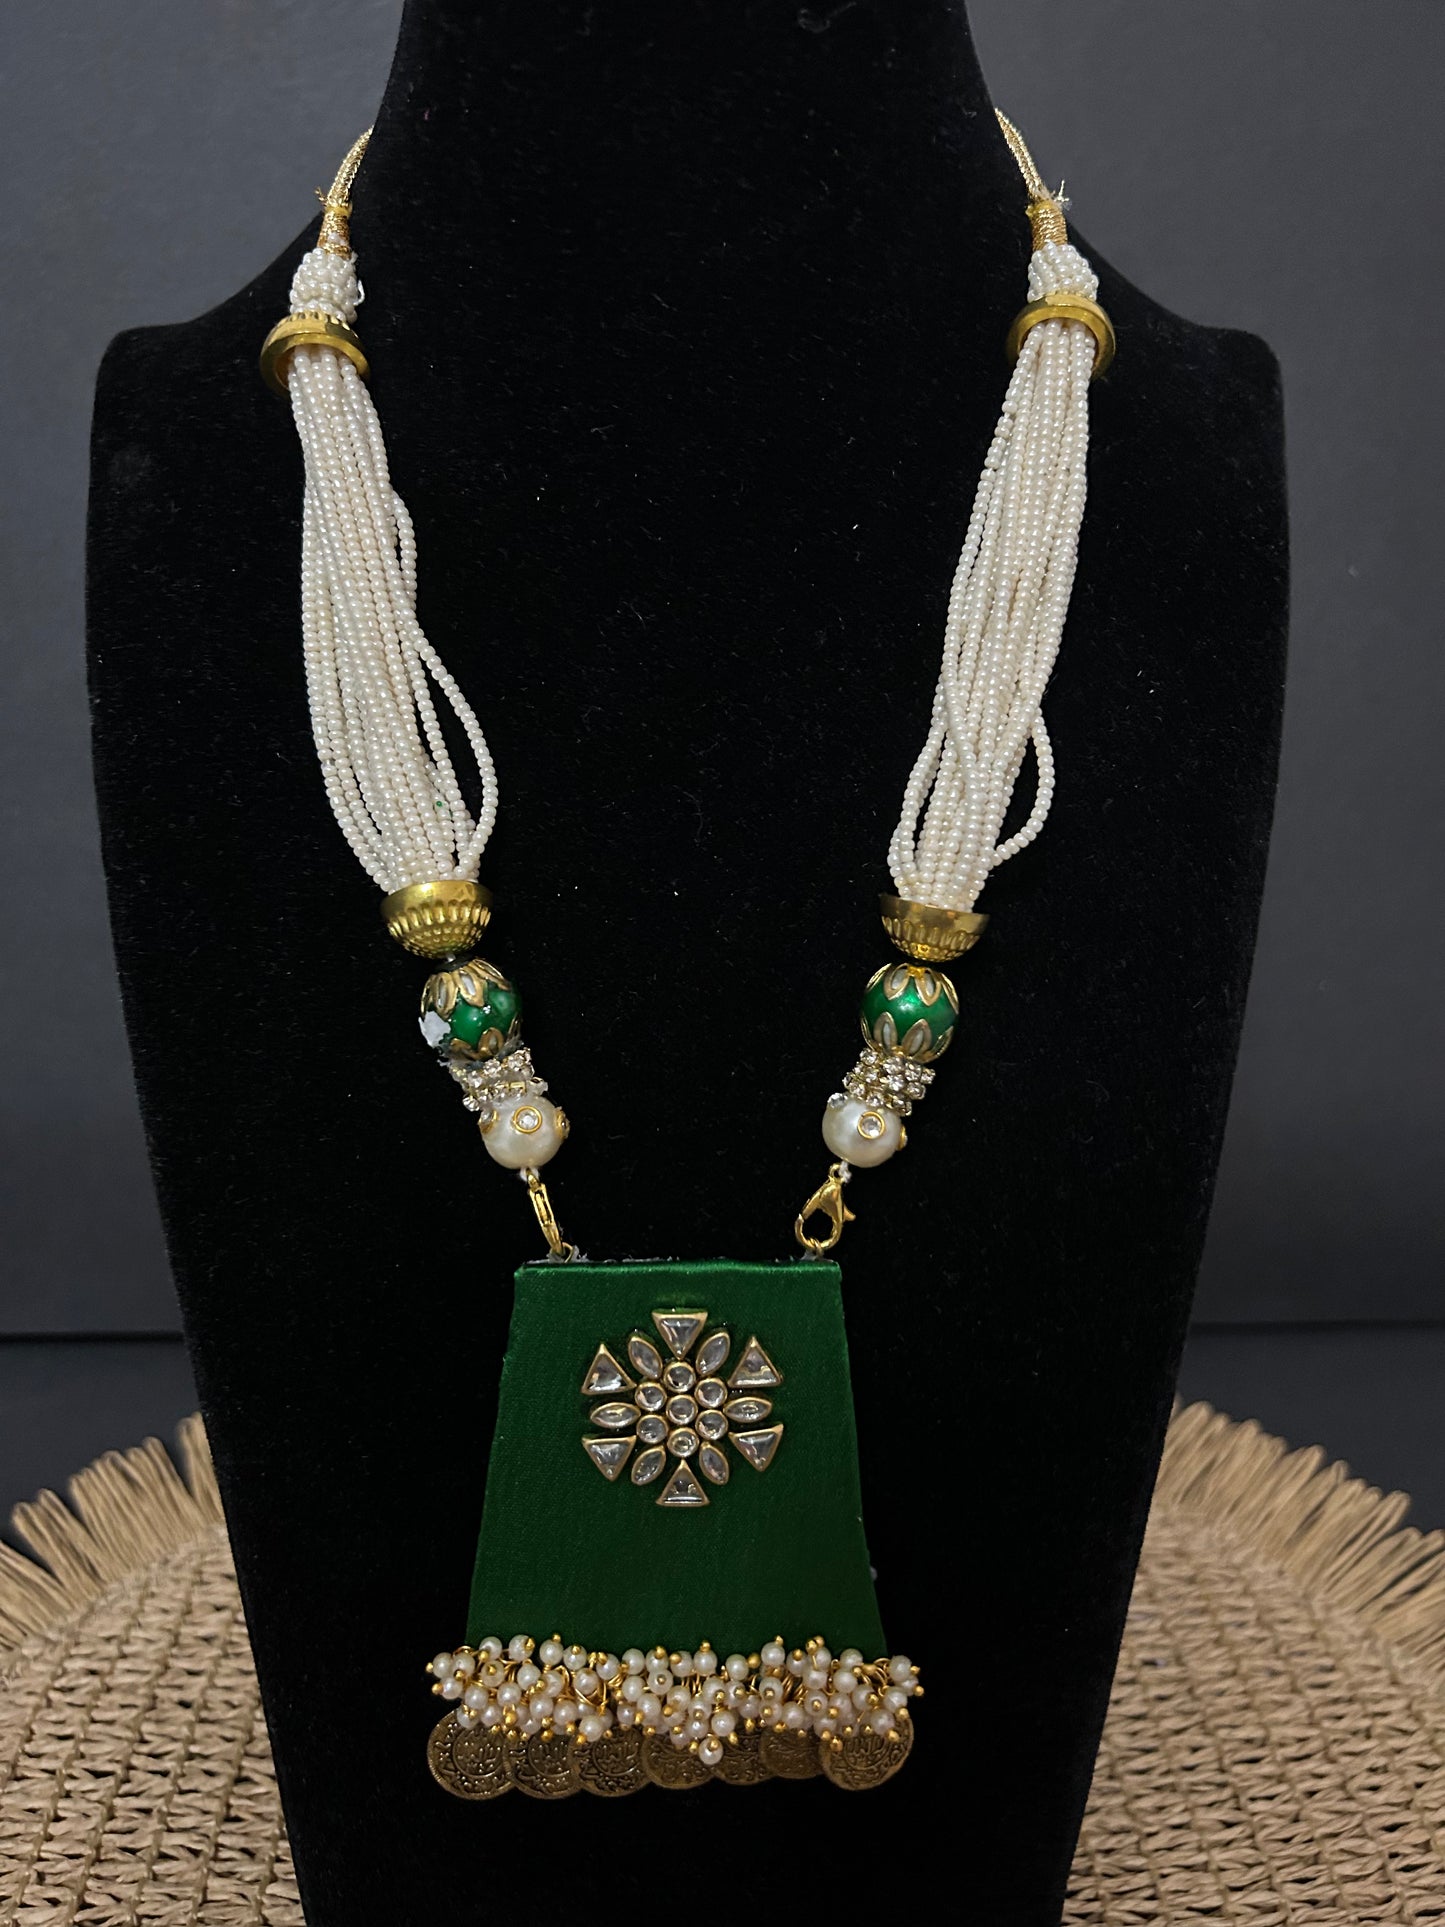 Kette - Lange Halskette aus grünem Seidenstoff in Vierseitenform, mit Kunstperlen